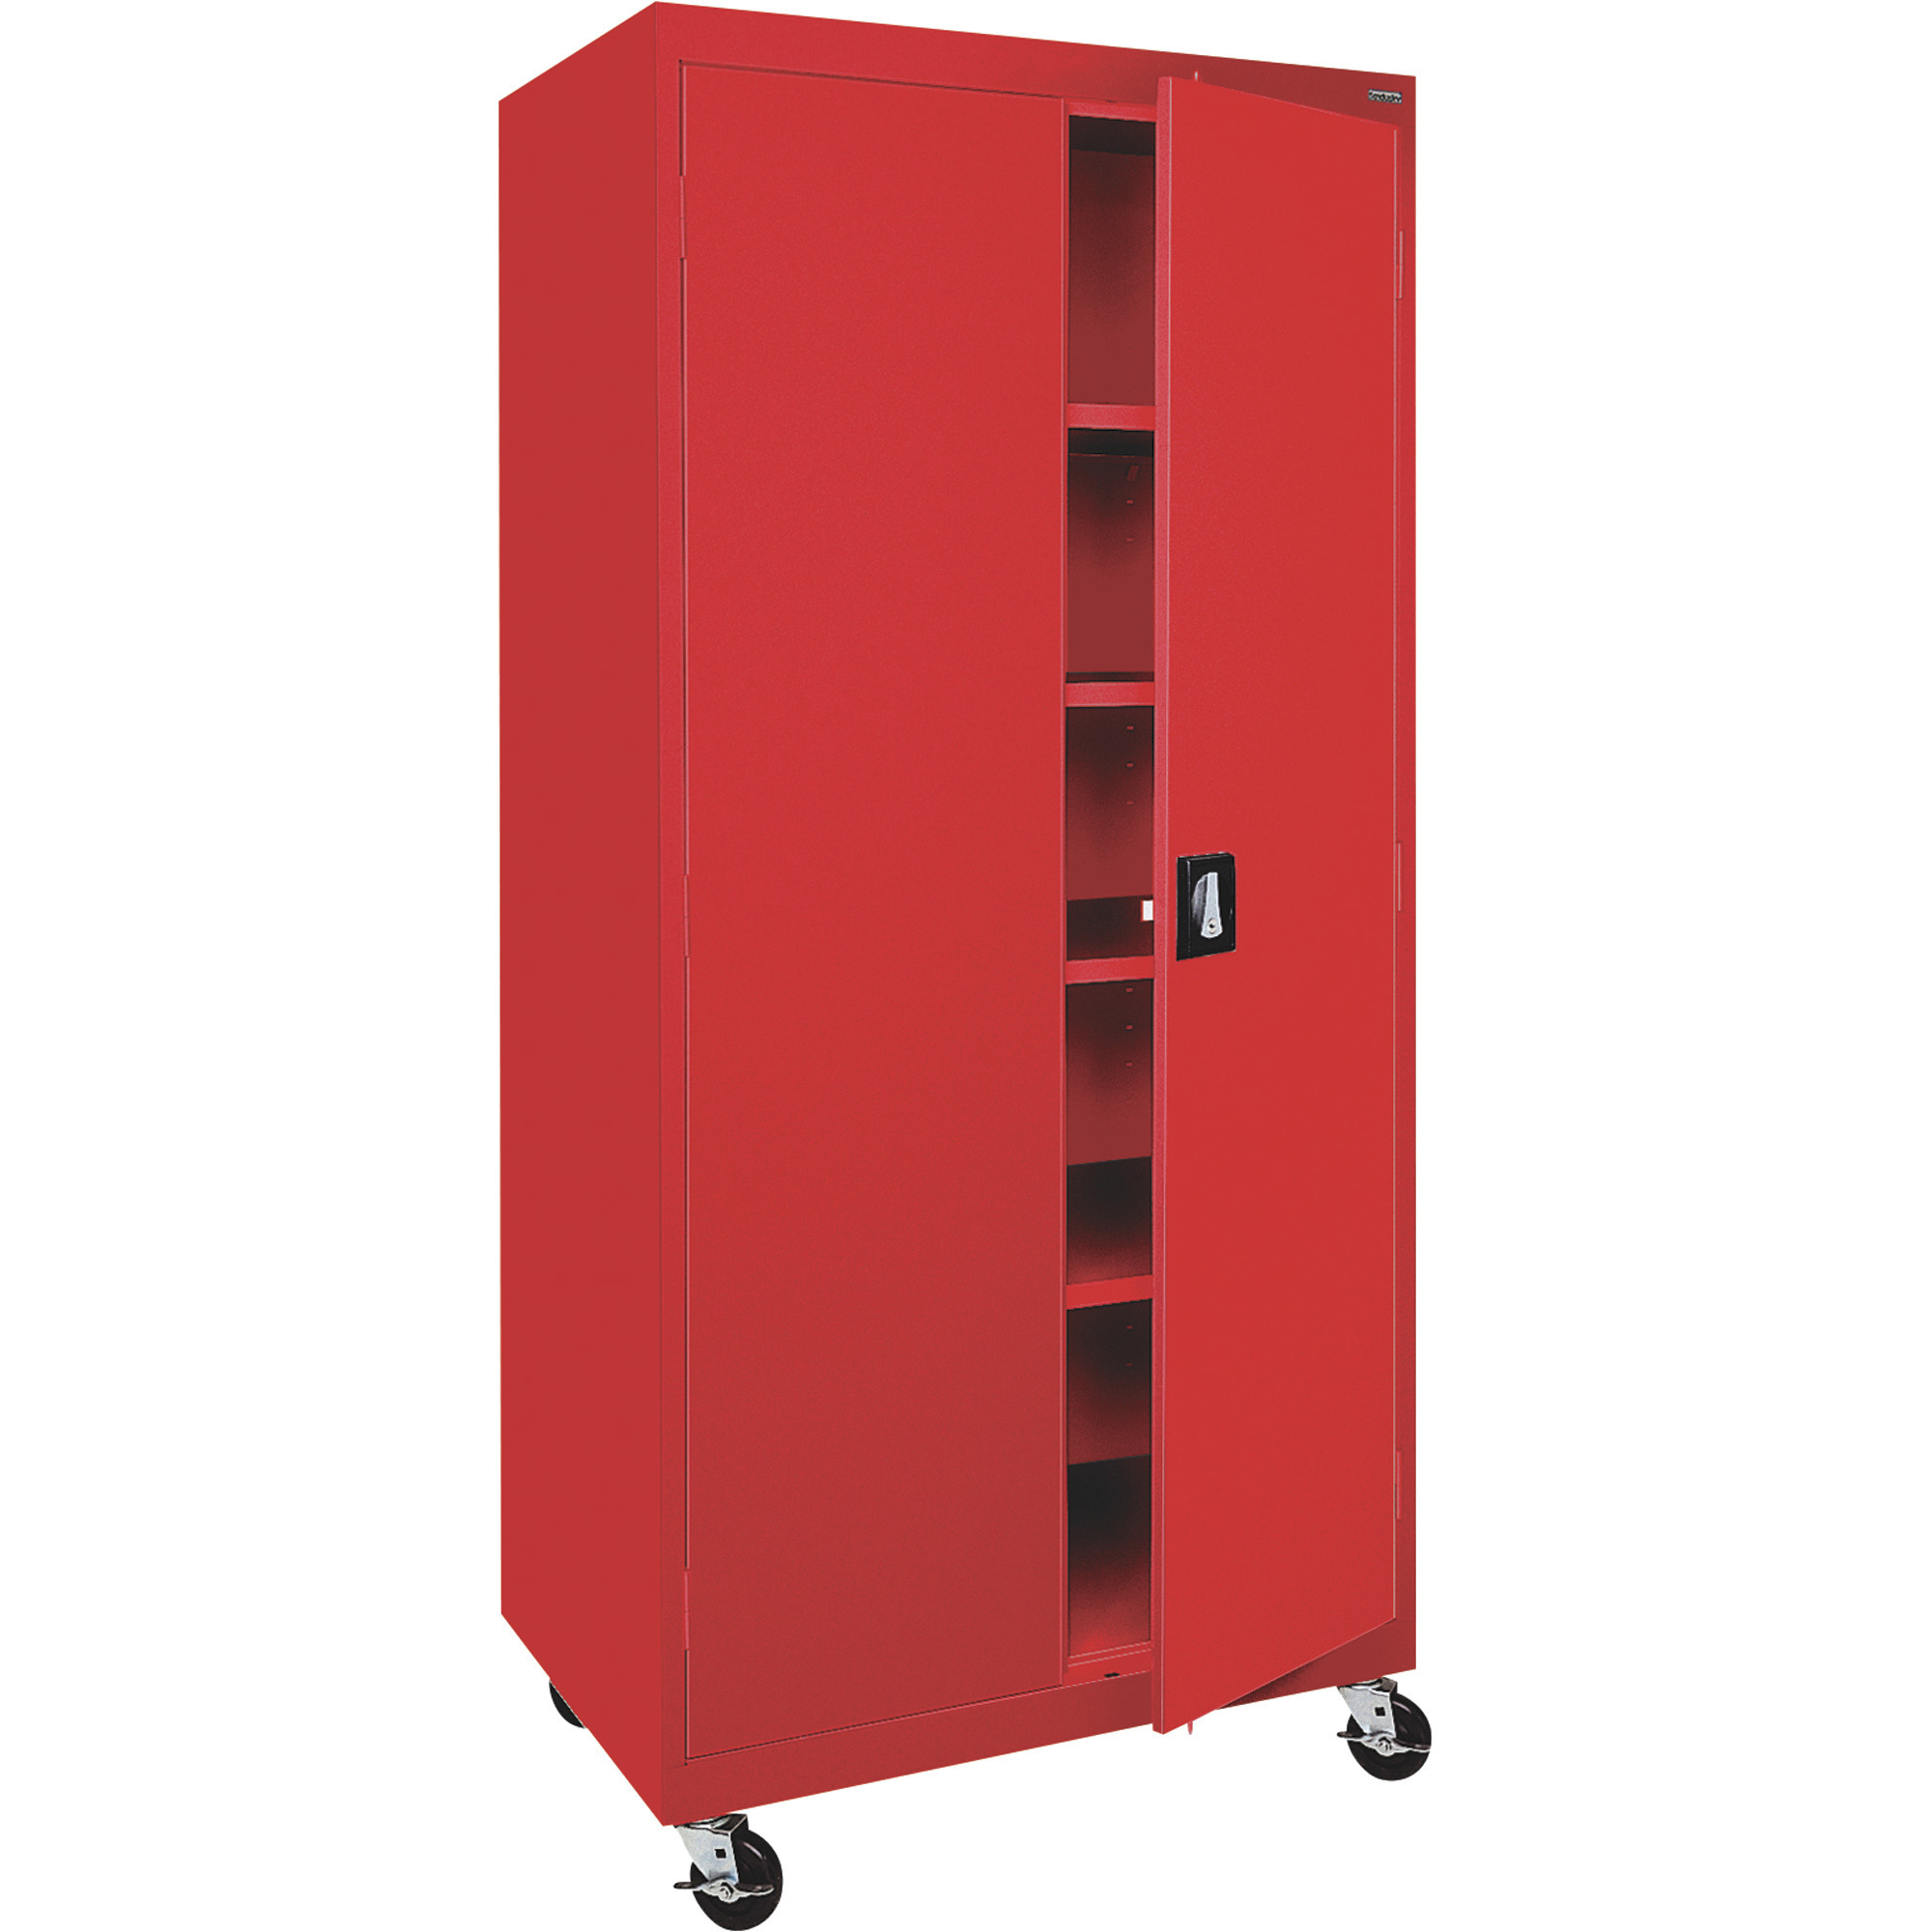 Heavy-Duty Welded Steel Mobile Cabinet — 36Inch W x 24Inch D x 78Inch H, Red, Model - Sandusky Lee TA4R362472-01